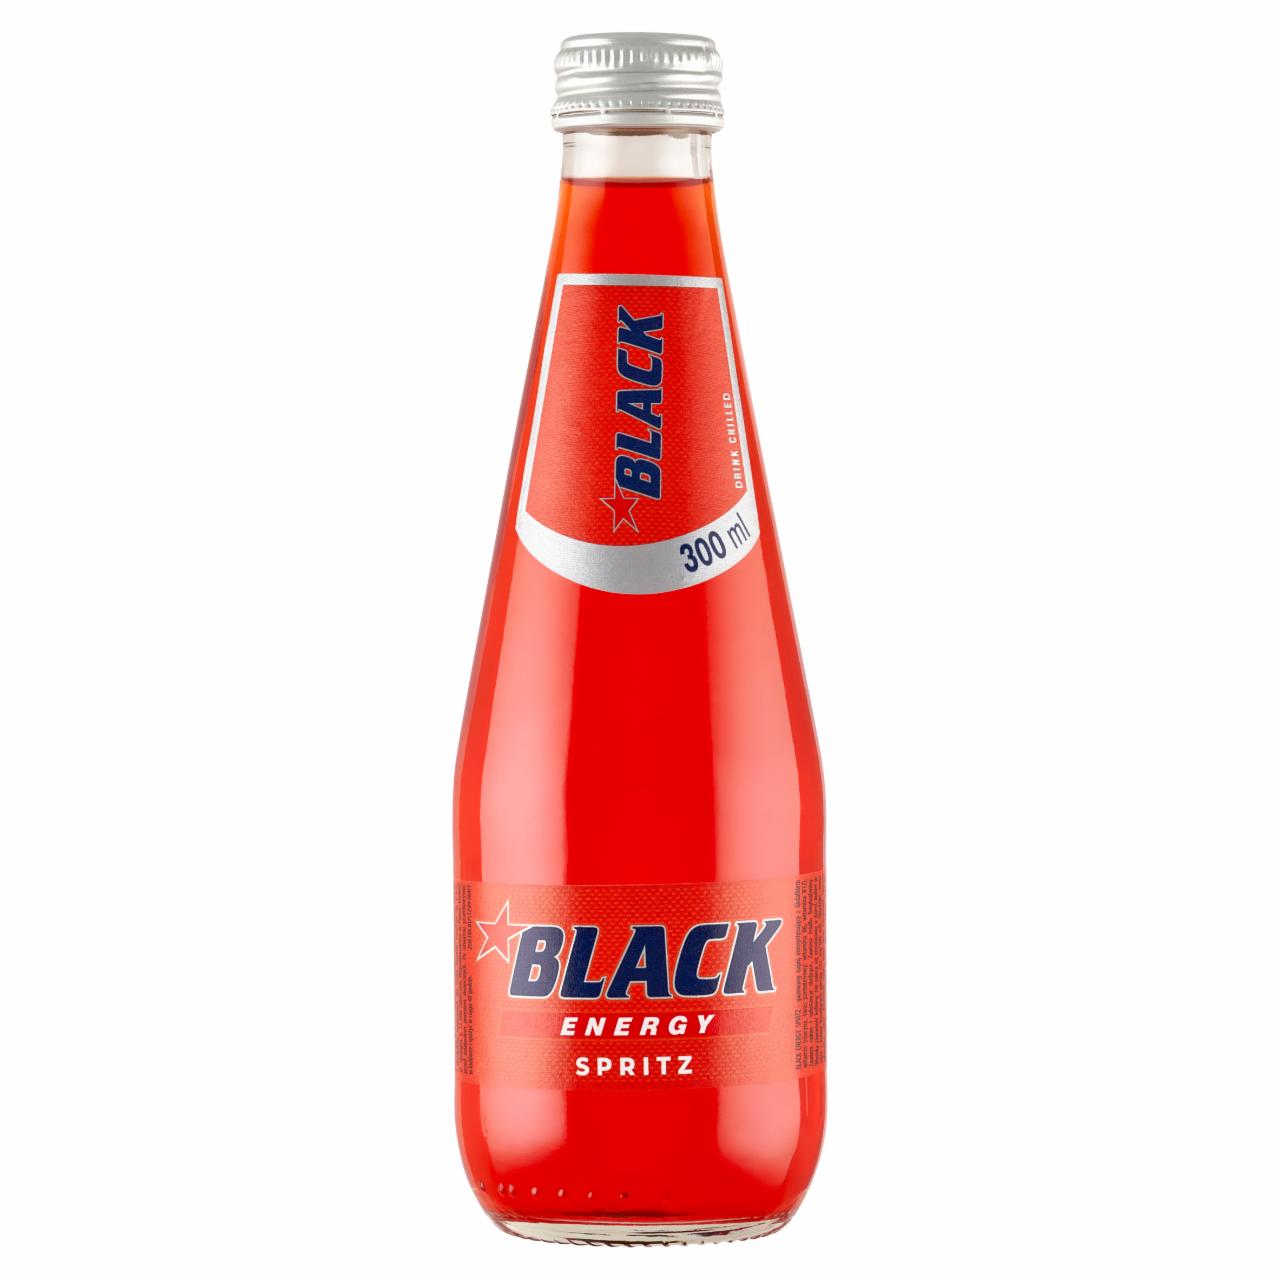 Zdjęcia - Black Energy Spritz Gazowany napój energetyzujący 300 ml